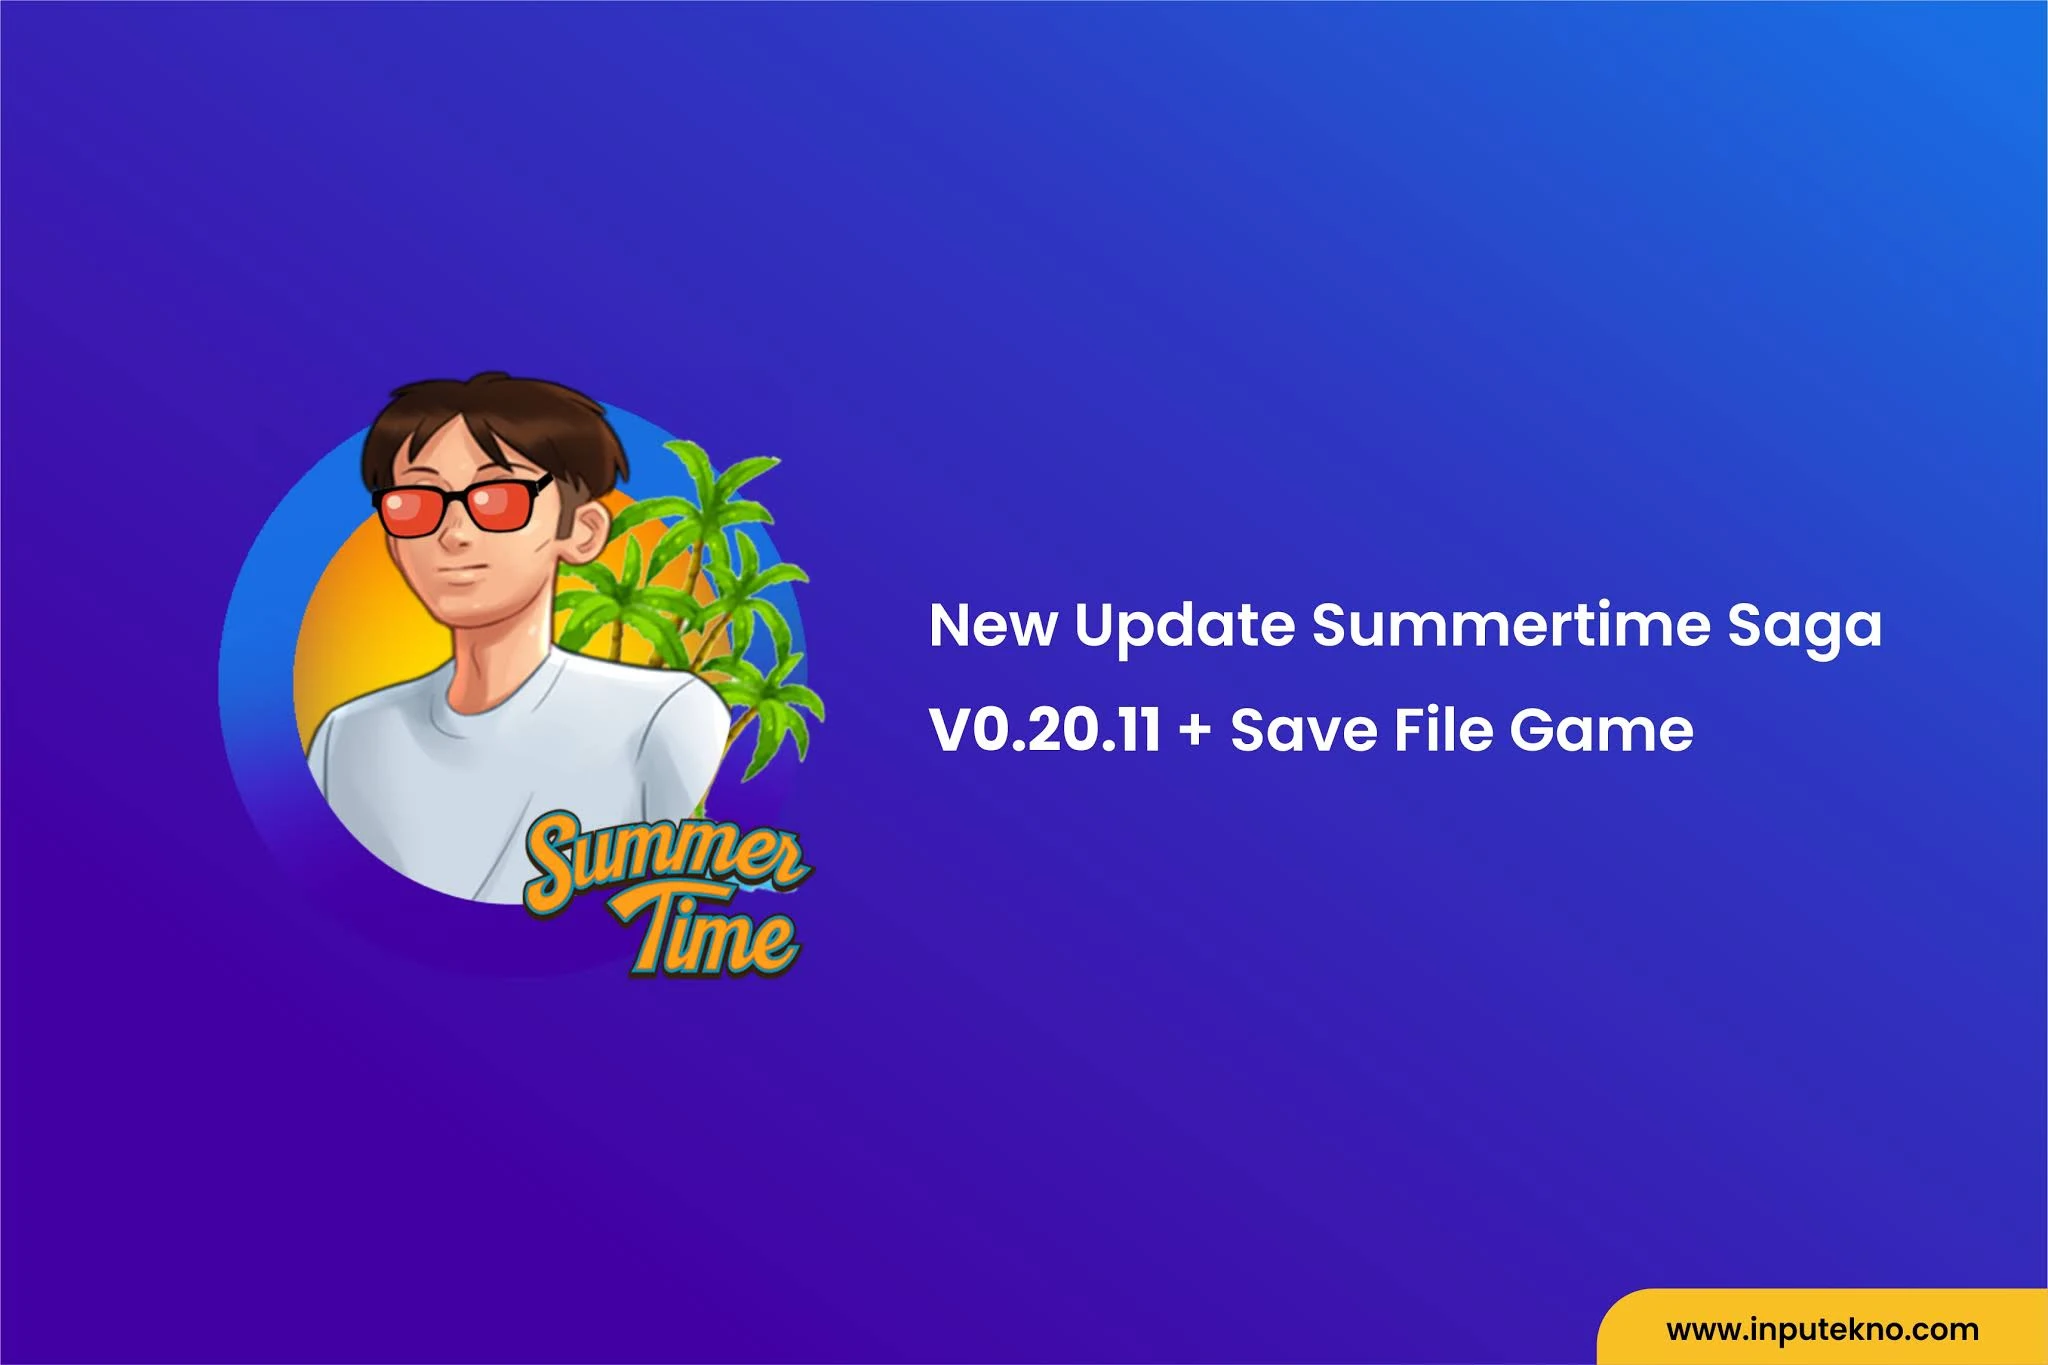 New Update Summertime Saga V0.20.11 + Save File Game